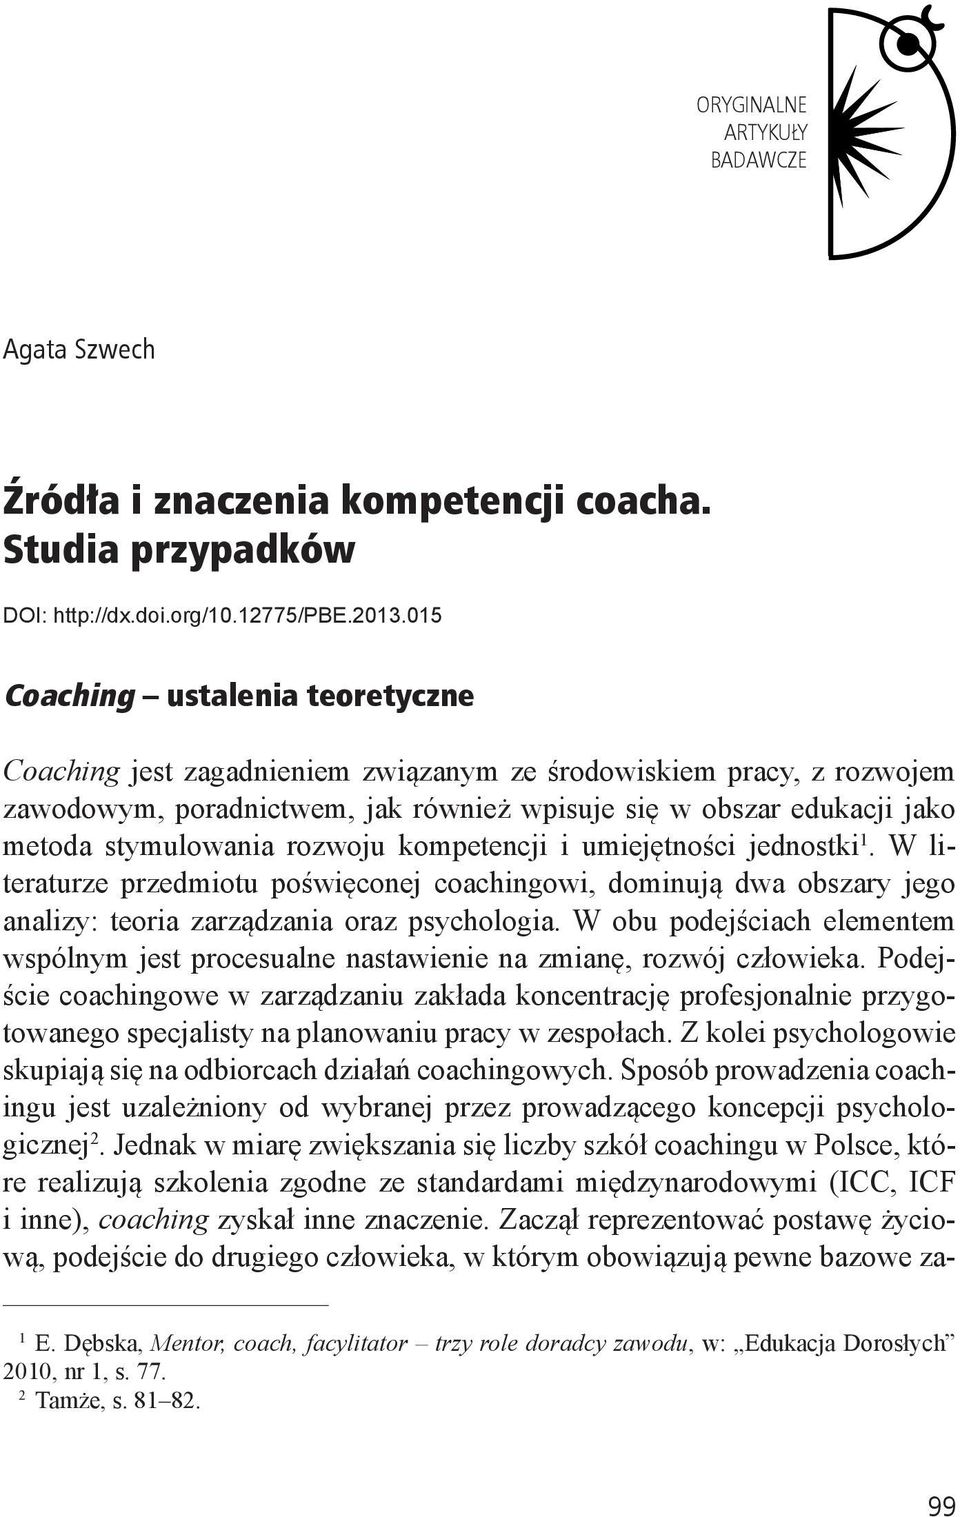 rozwoju kompetencji i umiejętności jednostki 1. W literaturze przedmiotu poświęconej coachingowi, dominują dwa obszary jego analizy: teoria zarządzania oraz psychologia.